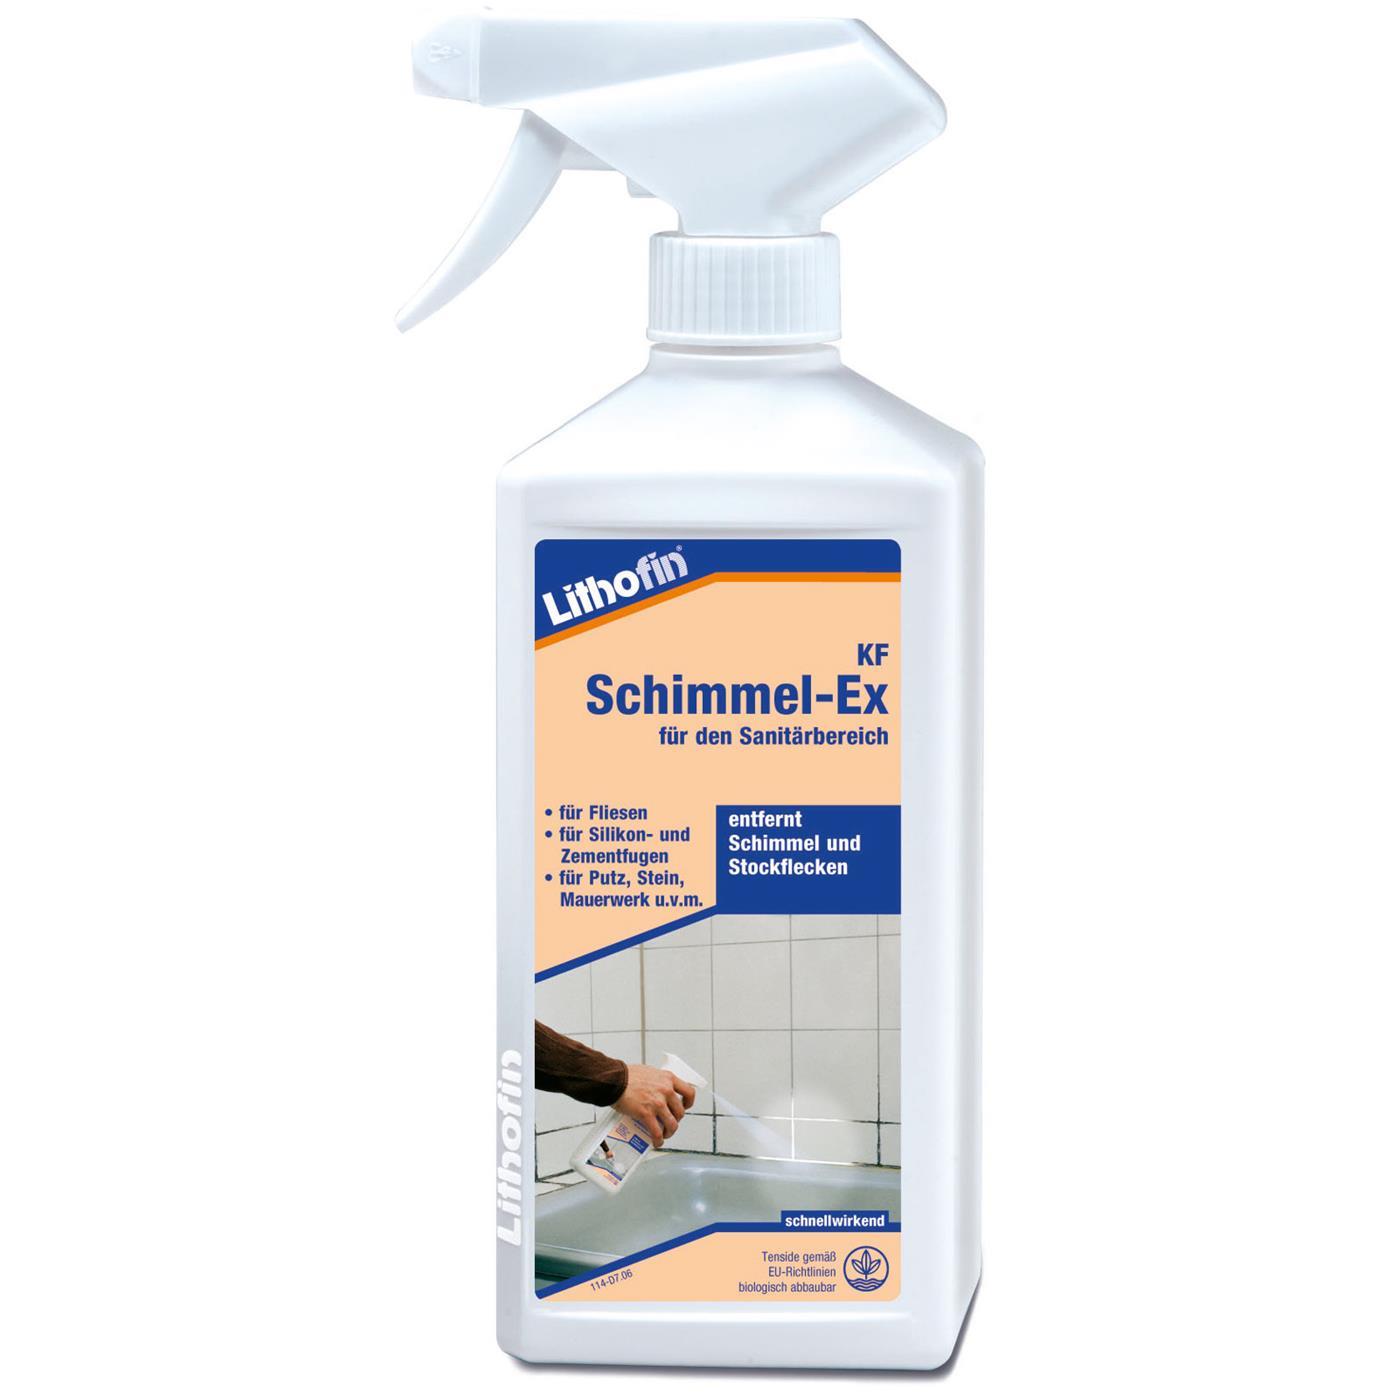 Lithofin KF Schimmel-Ex Schimmelentferner 500 ml